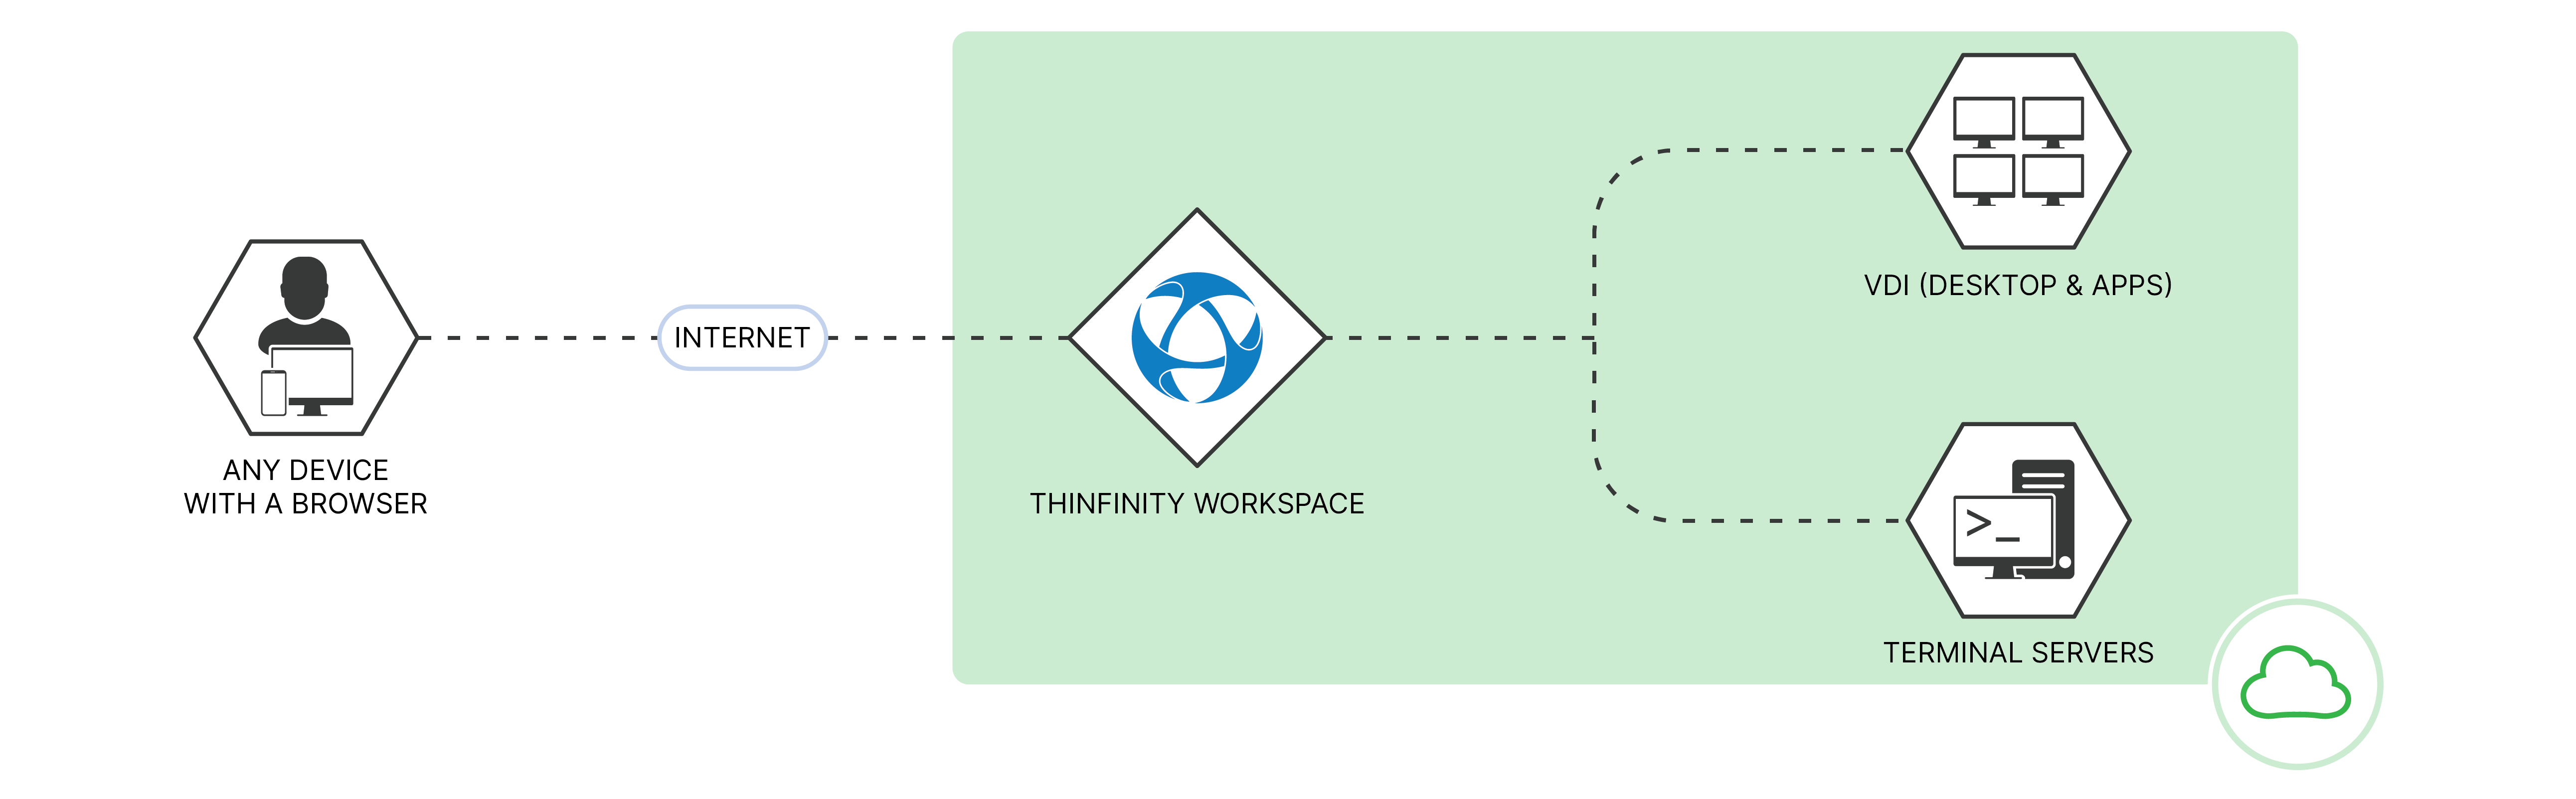 Thinfinity-area di lavoro-nuvola